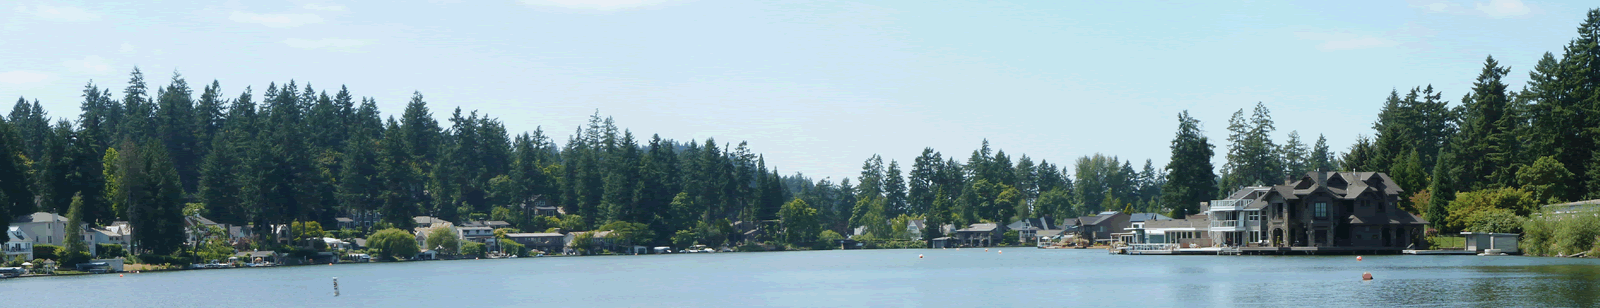 Lake-Oswego-Lake